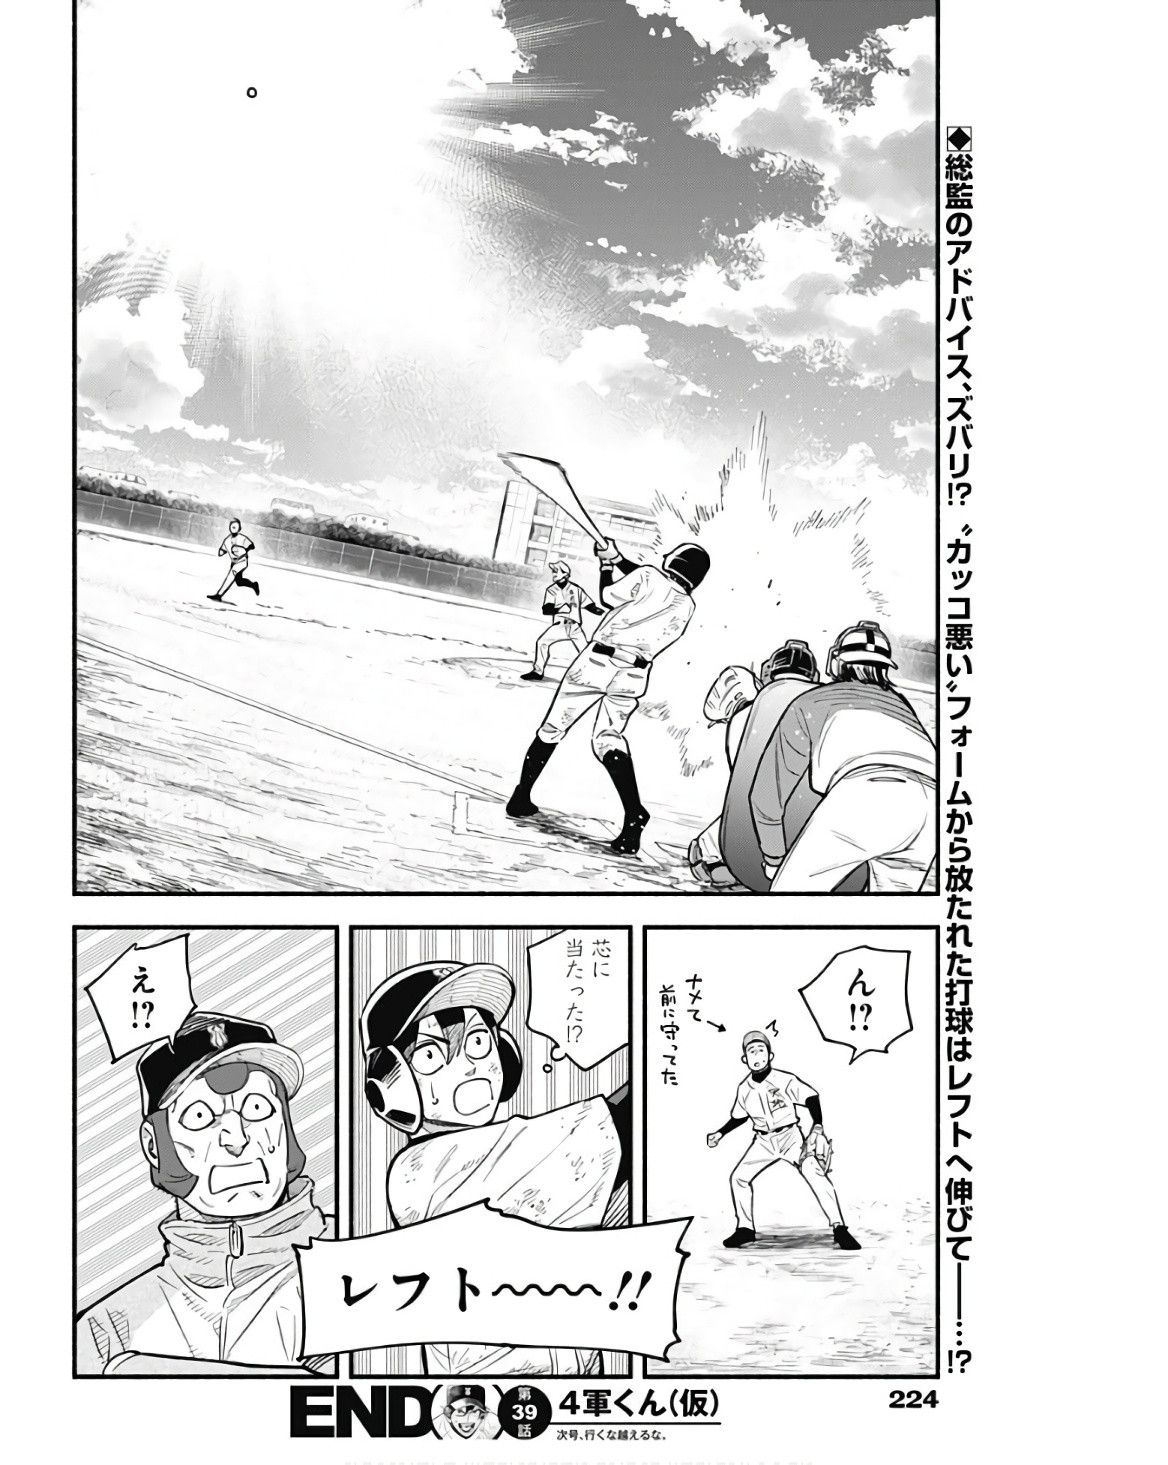 4-gun-kun (Kari) - Chapter 39 - Page 18